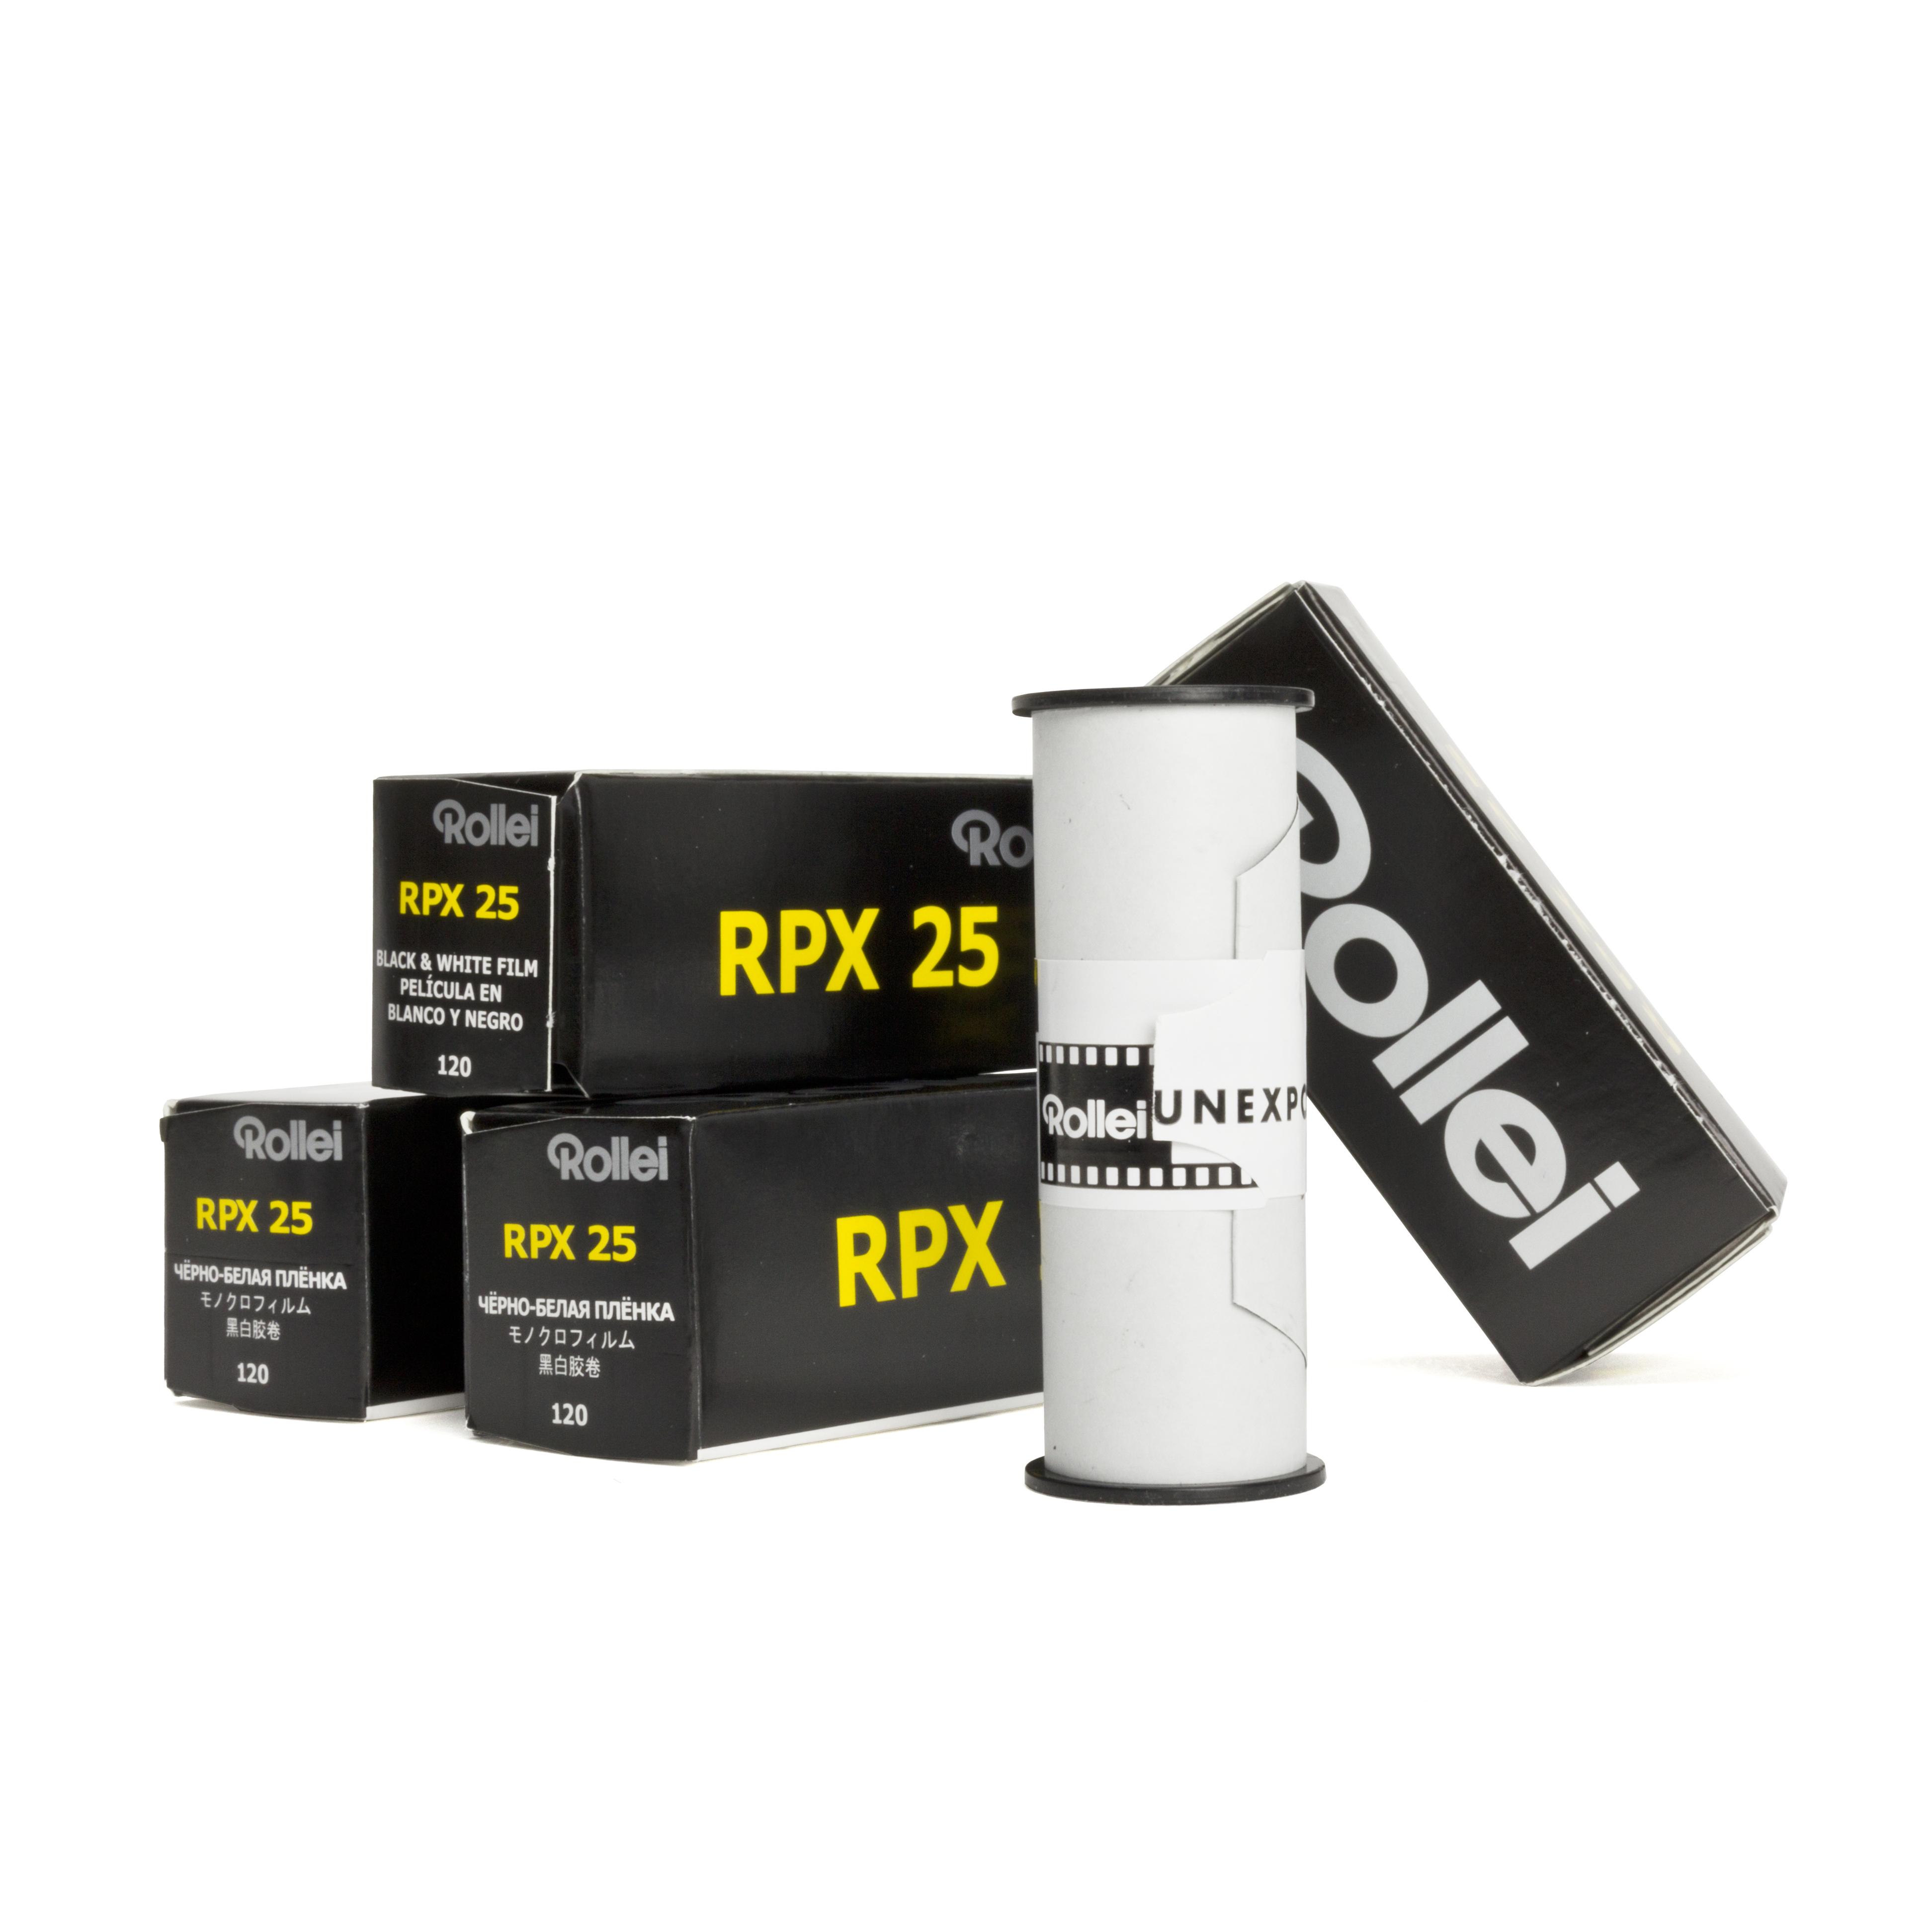 5x Rollei RPX 25 120 Rollfilm